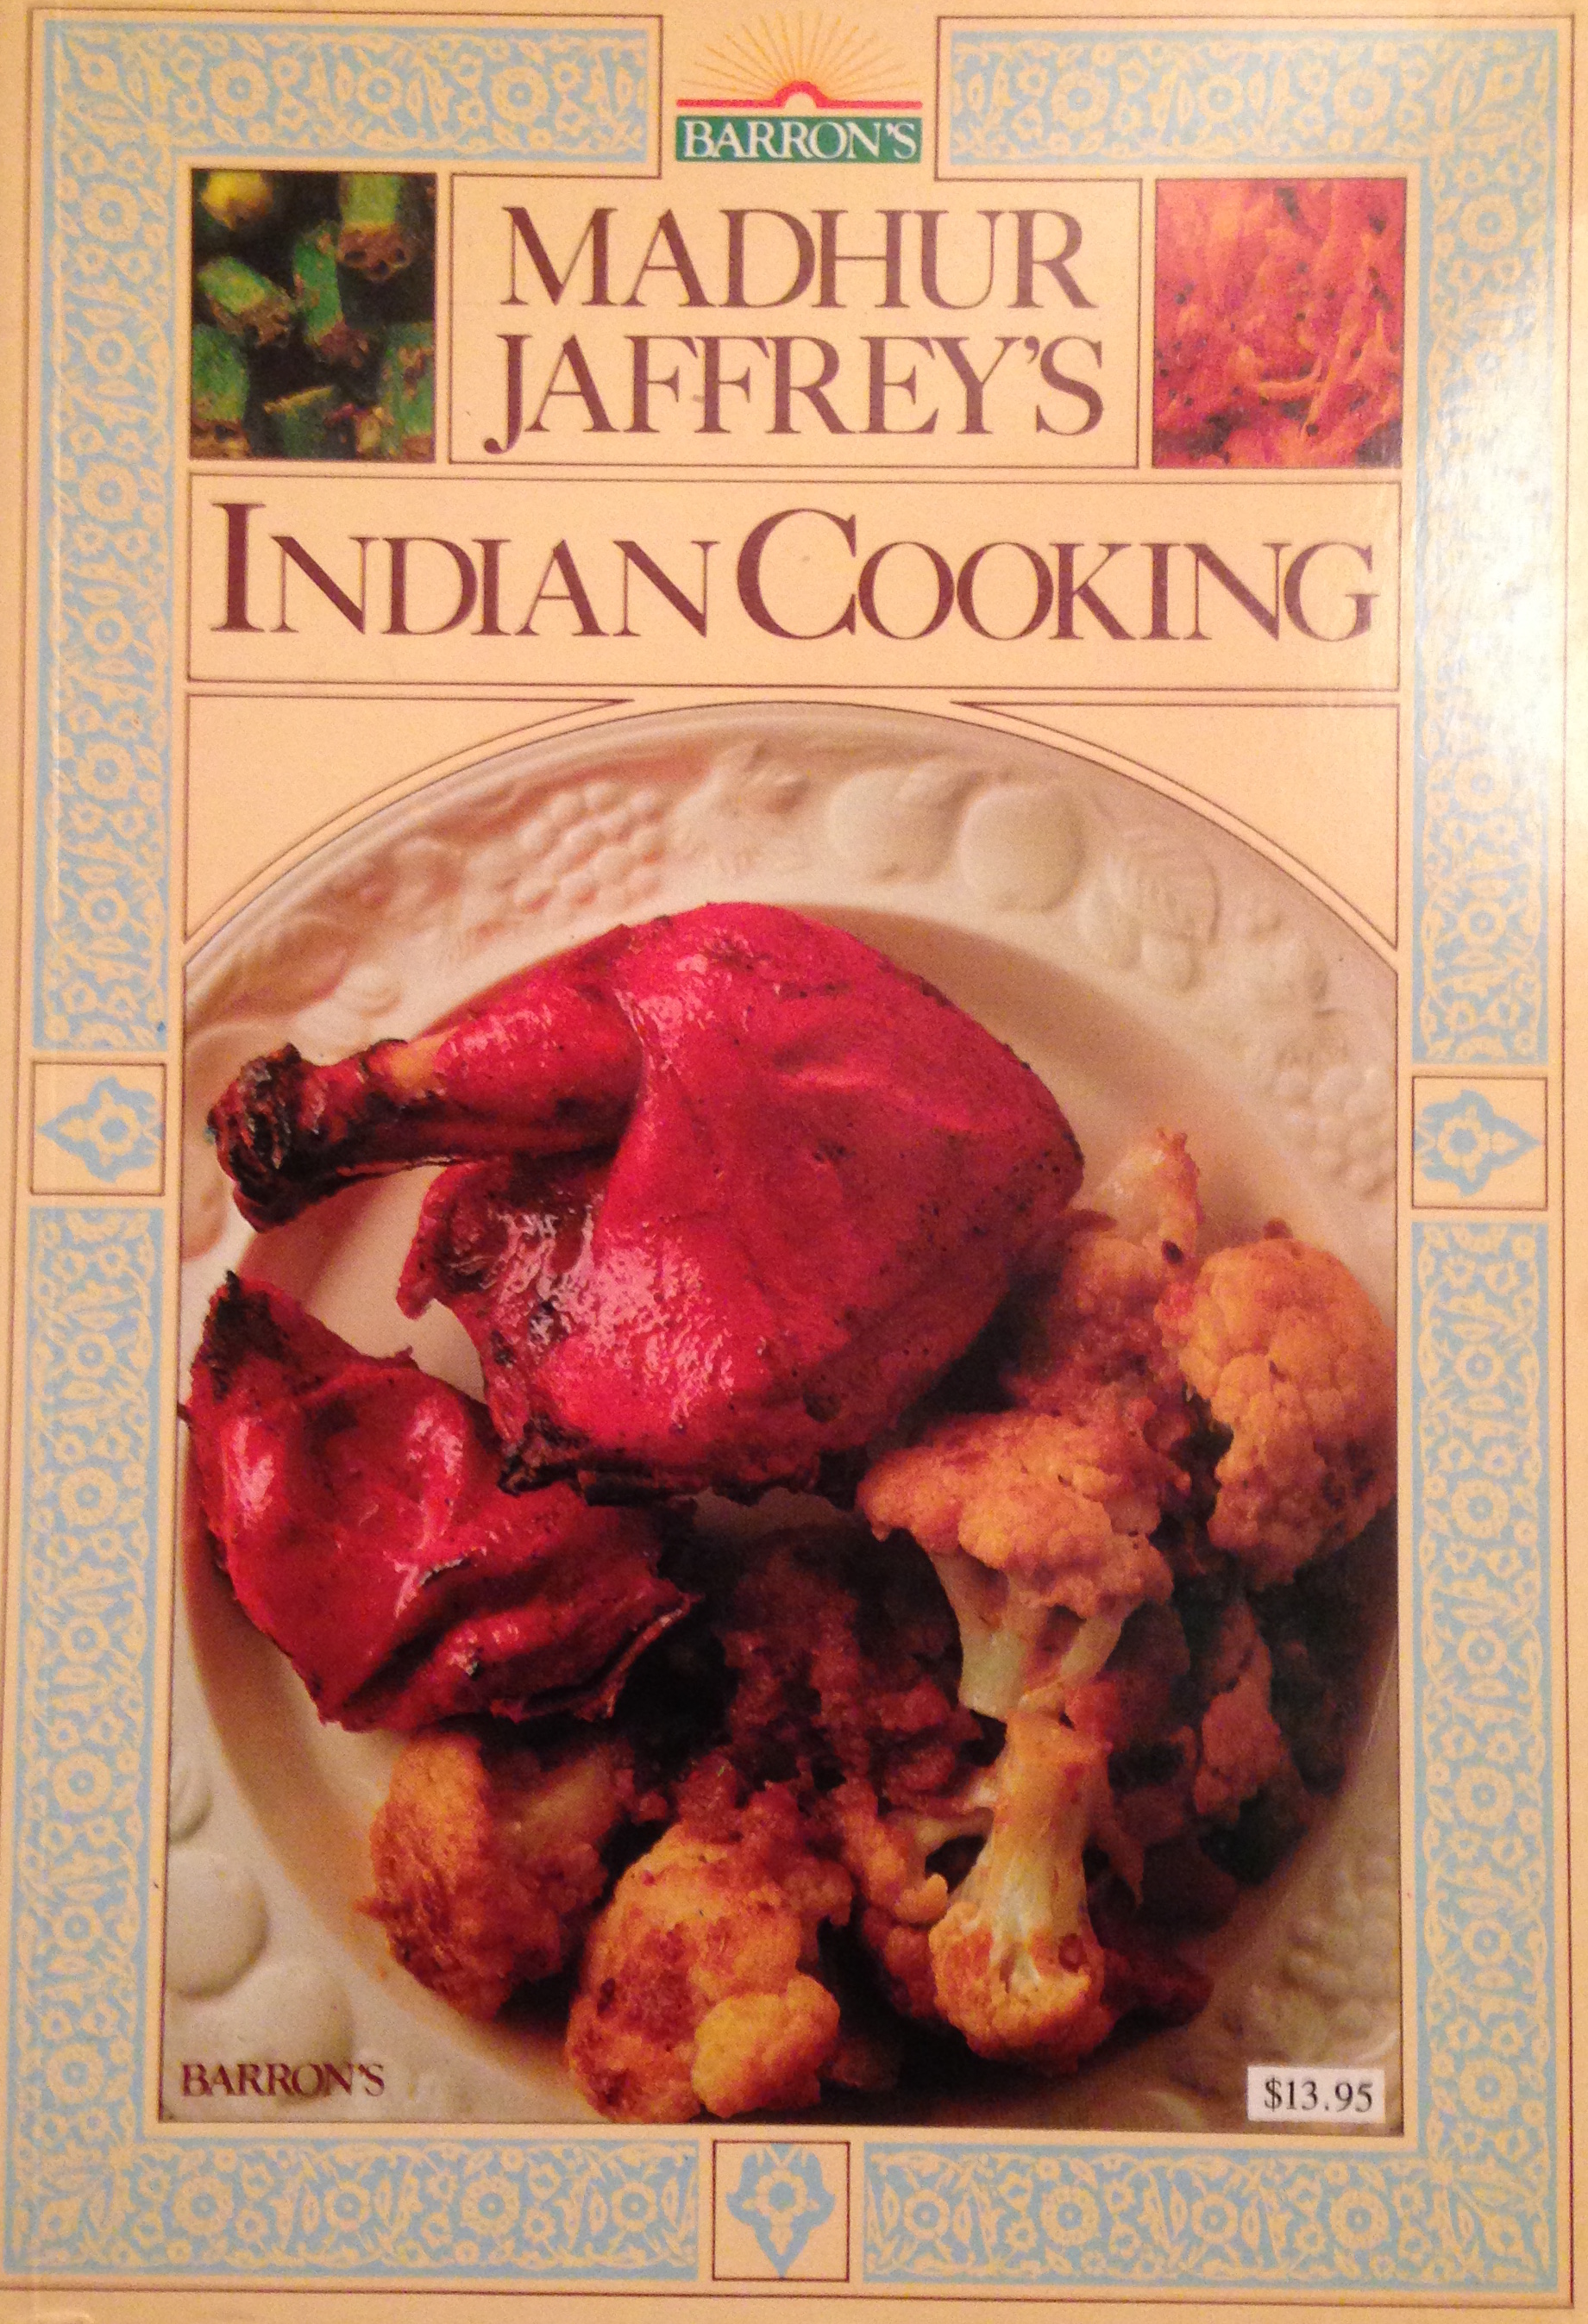 Madhur Jaffrey's Indian Cooking